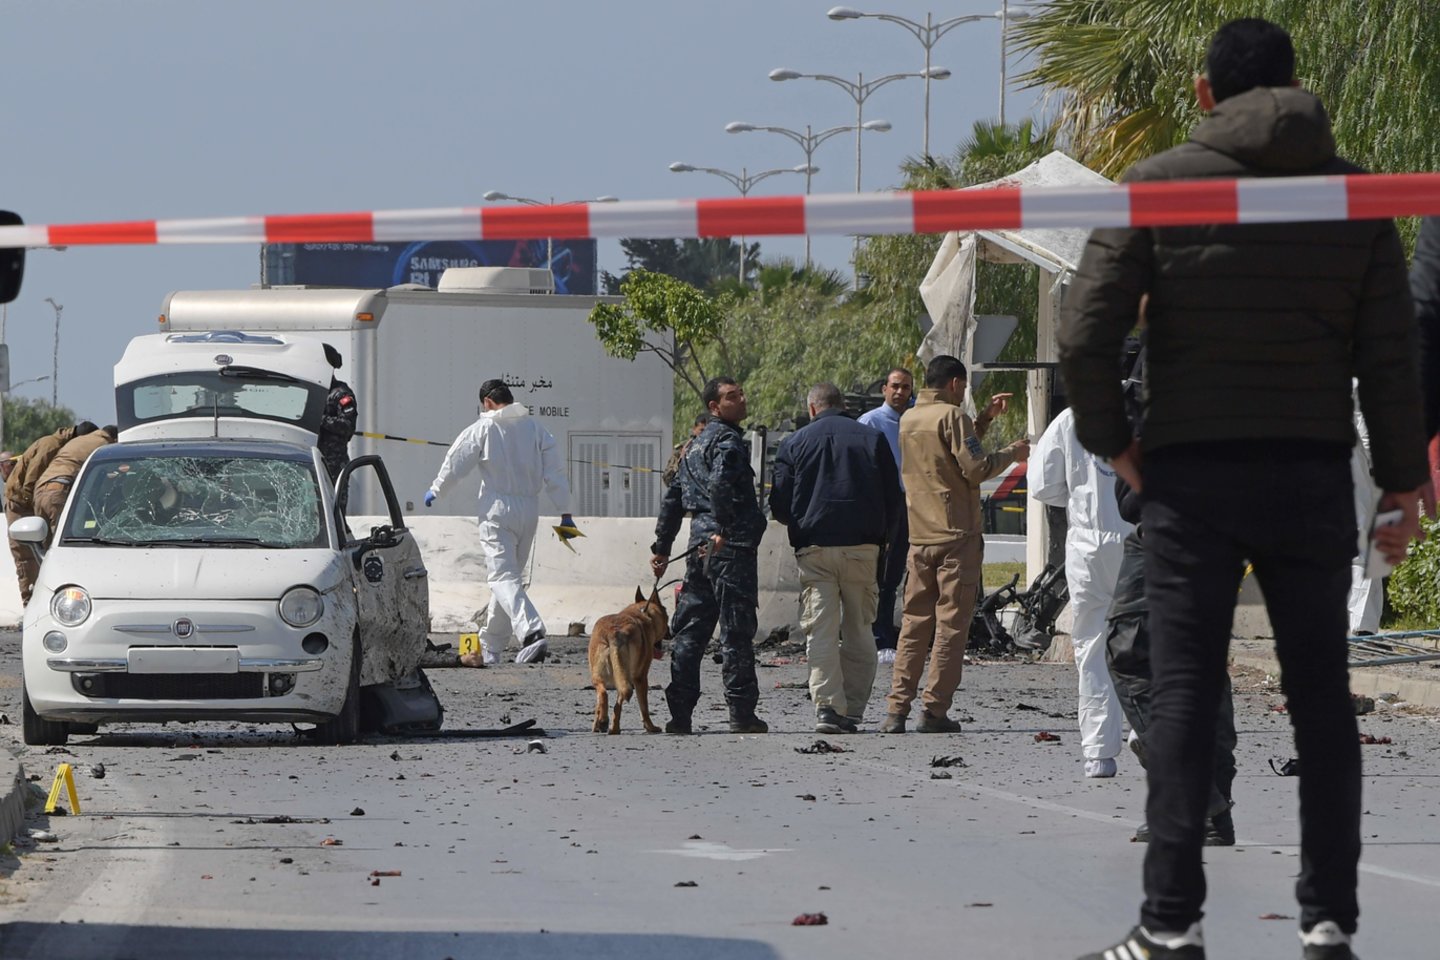  Tuniso sostinę penktadienį nusiaubė dviguba mirtininkų sprogdintojų ataka, per kurią užpuolikai sužeidė šešis žmones, įskaitant JAV ambasadą saugojusią policiją, pranešė valdžios institucijos.<br> AFP/Scanpix nuotr.